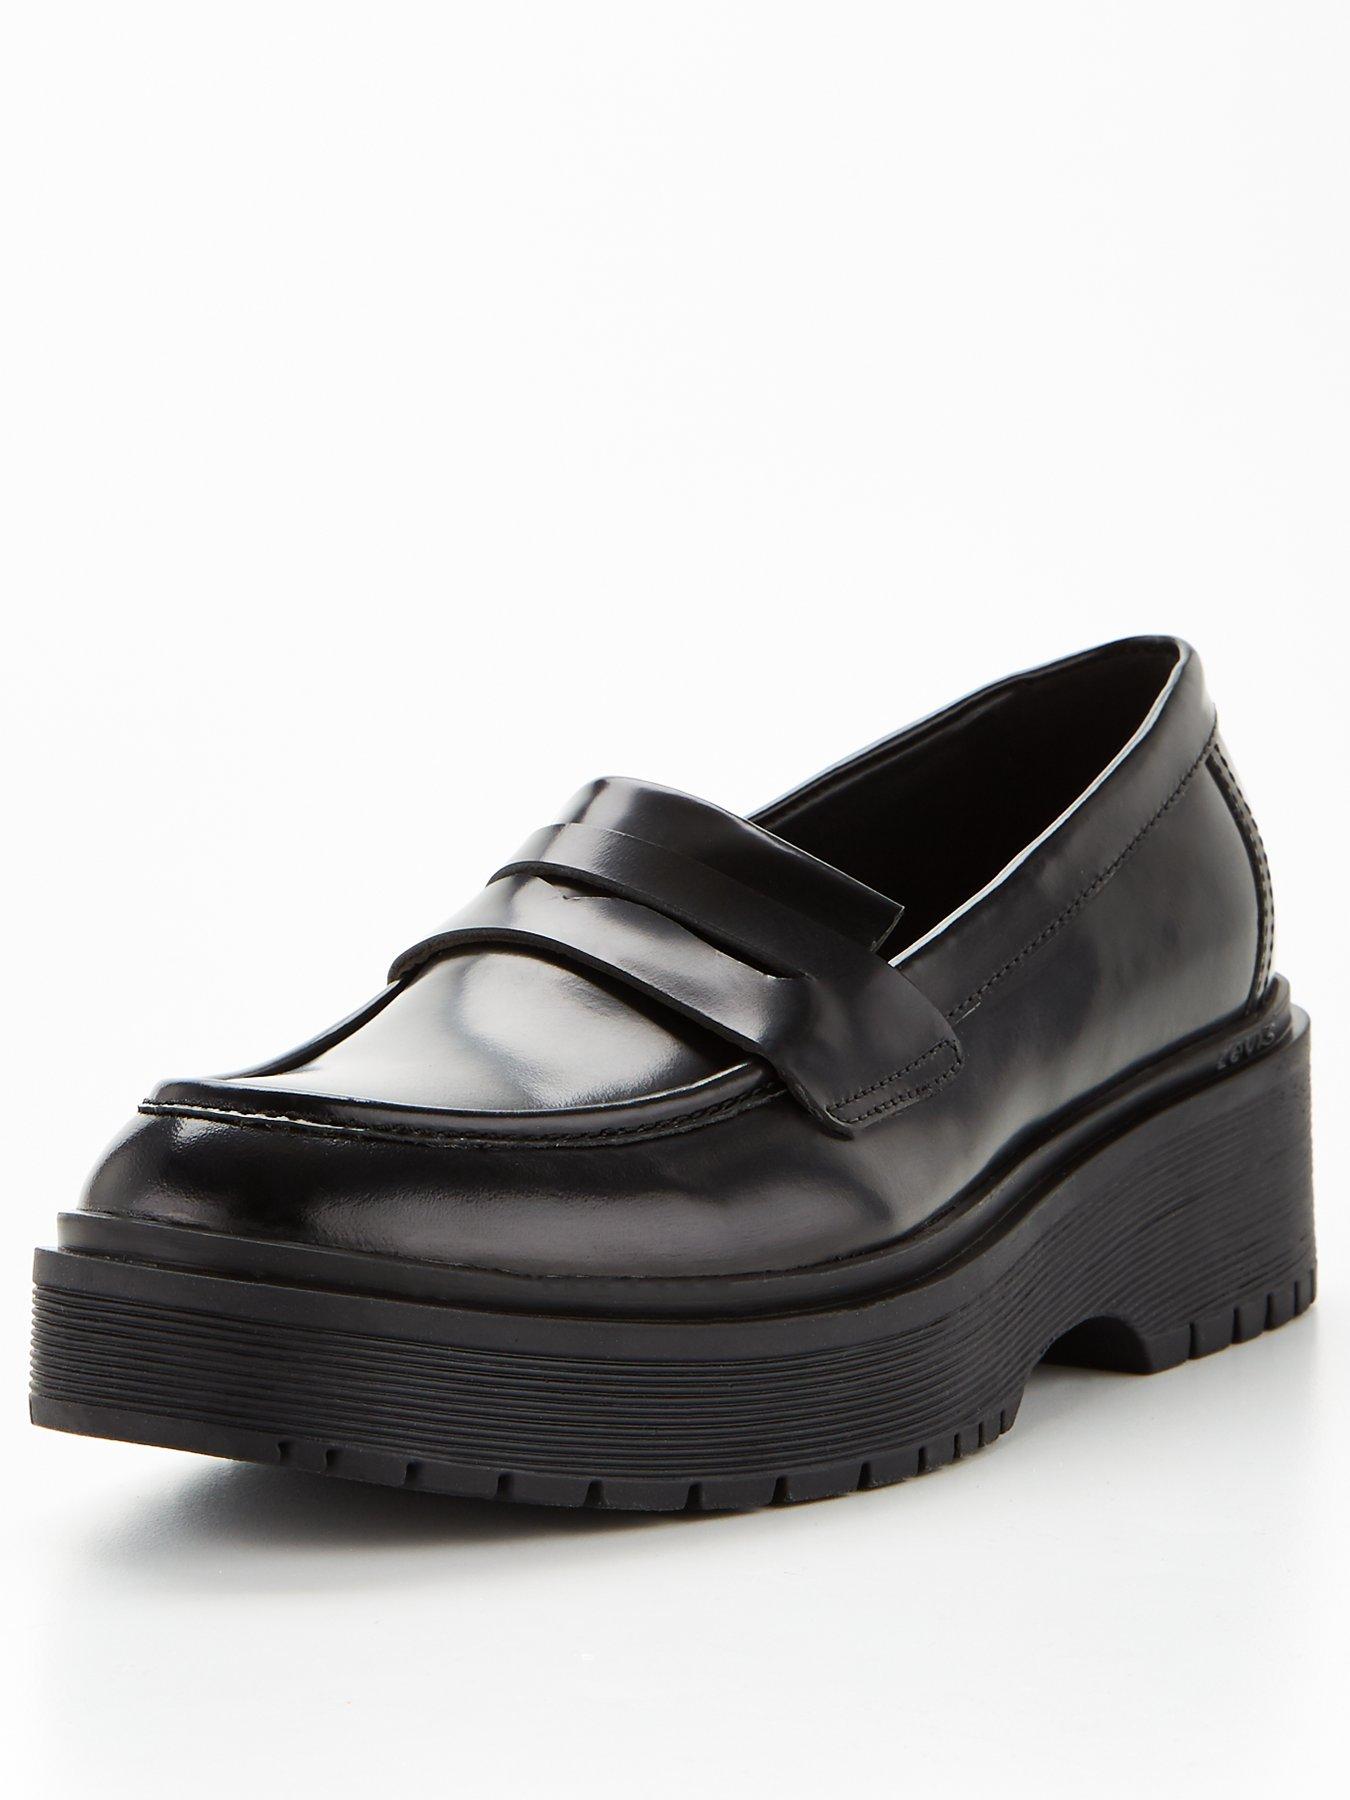 Levi's Shelby Chunky Slip On Leather Shoe - Black | very.co.uk